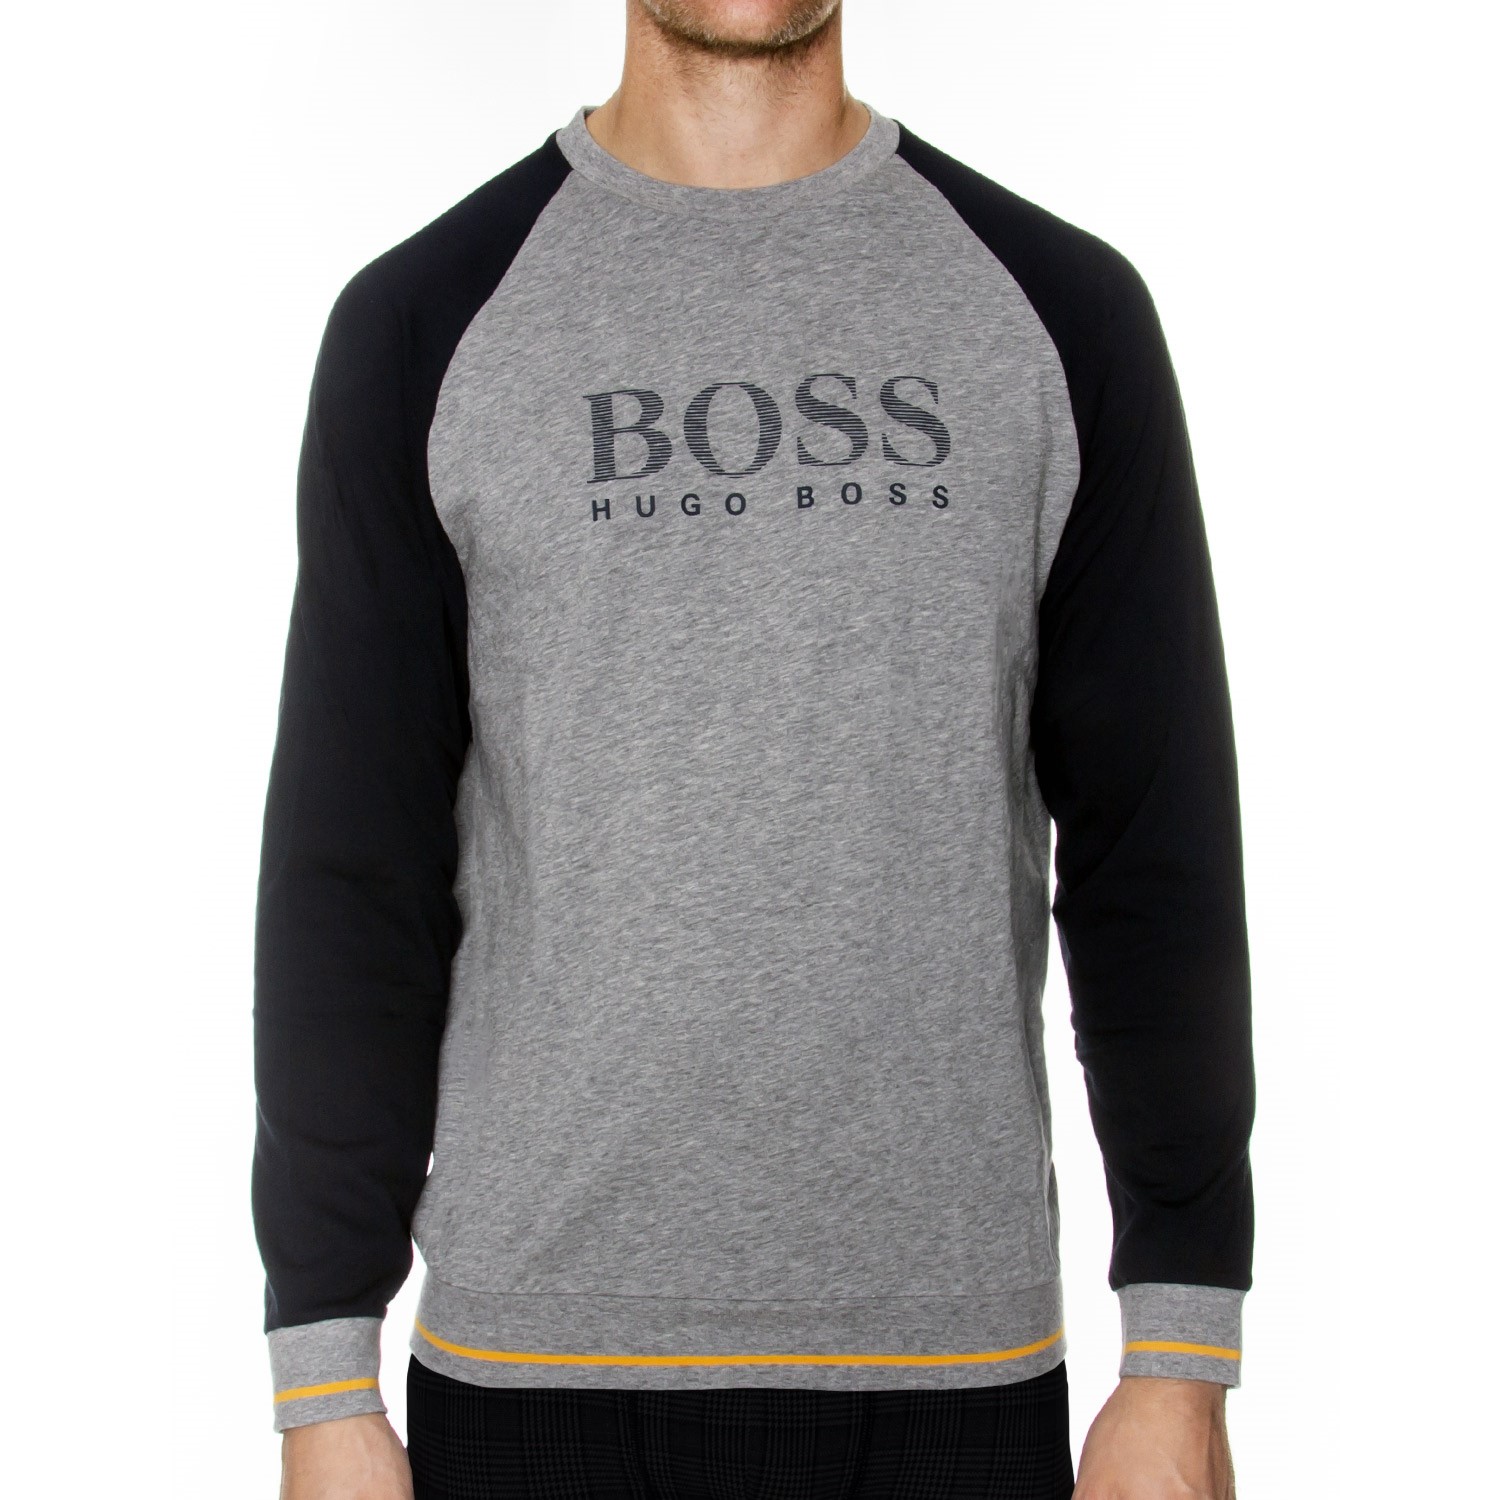 Hugo Boss Authentic Sweatshirt 